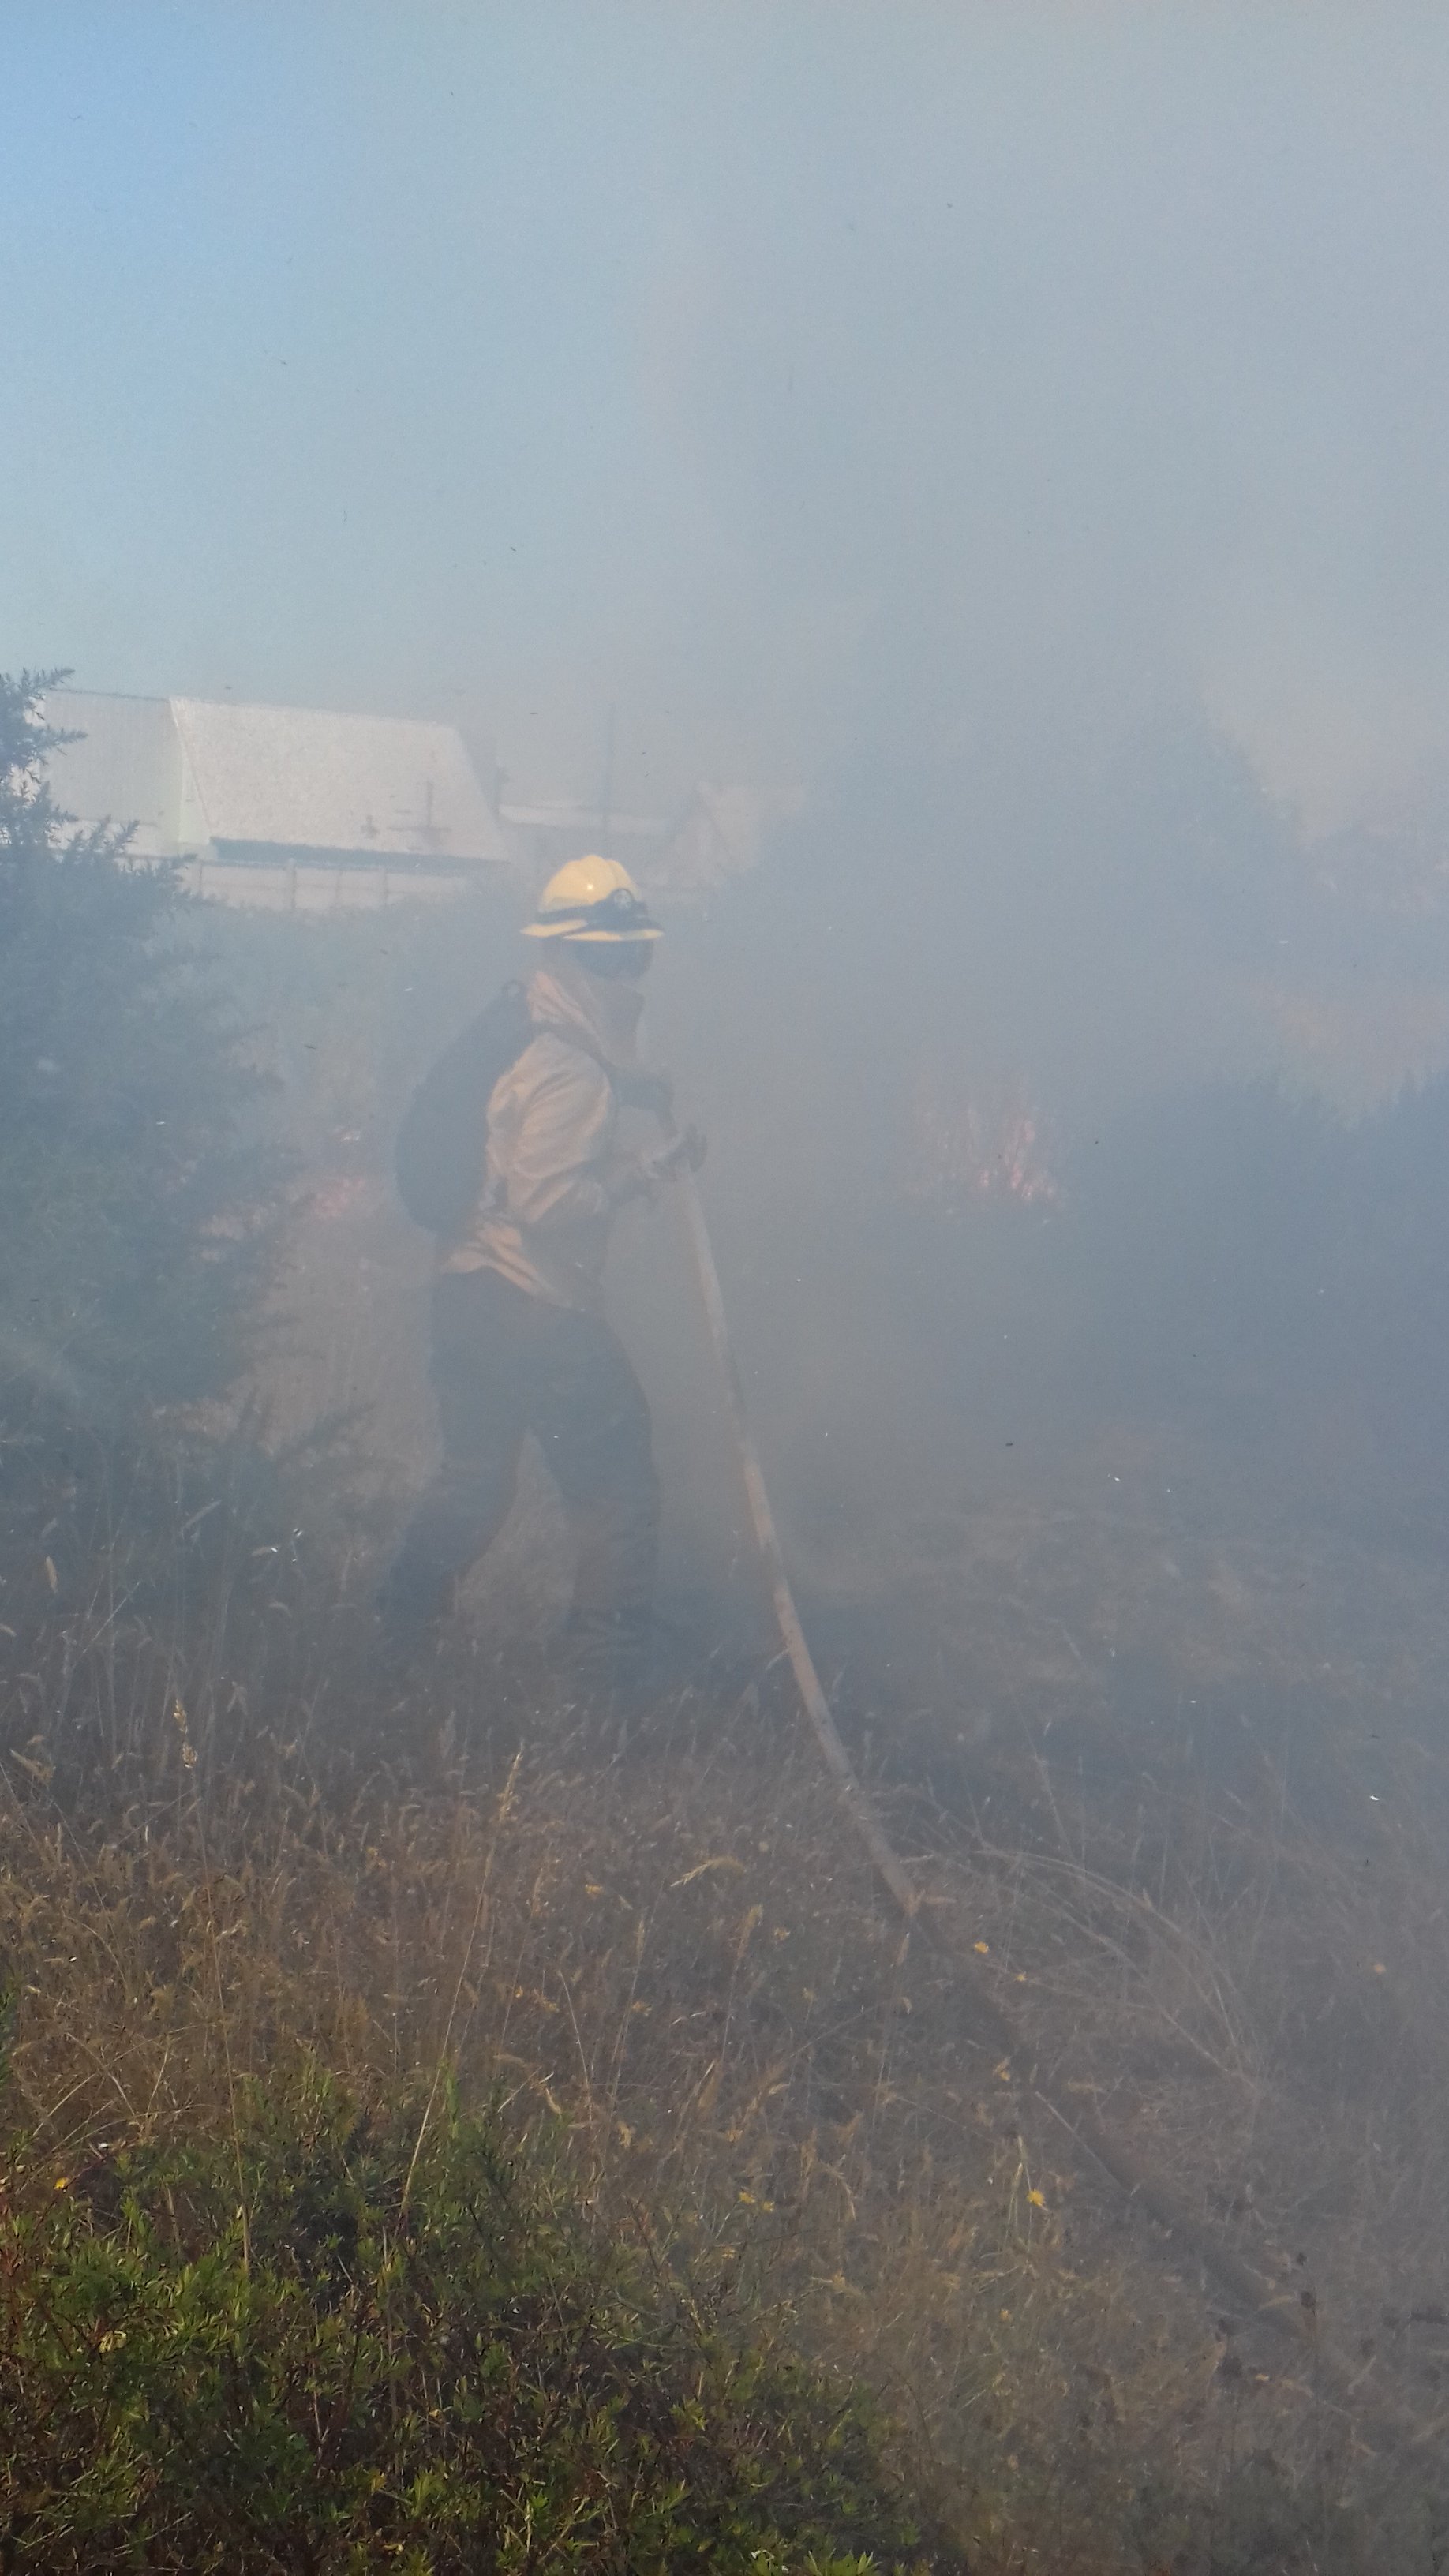 incendio forestal combate directo con equipo de agua